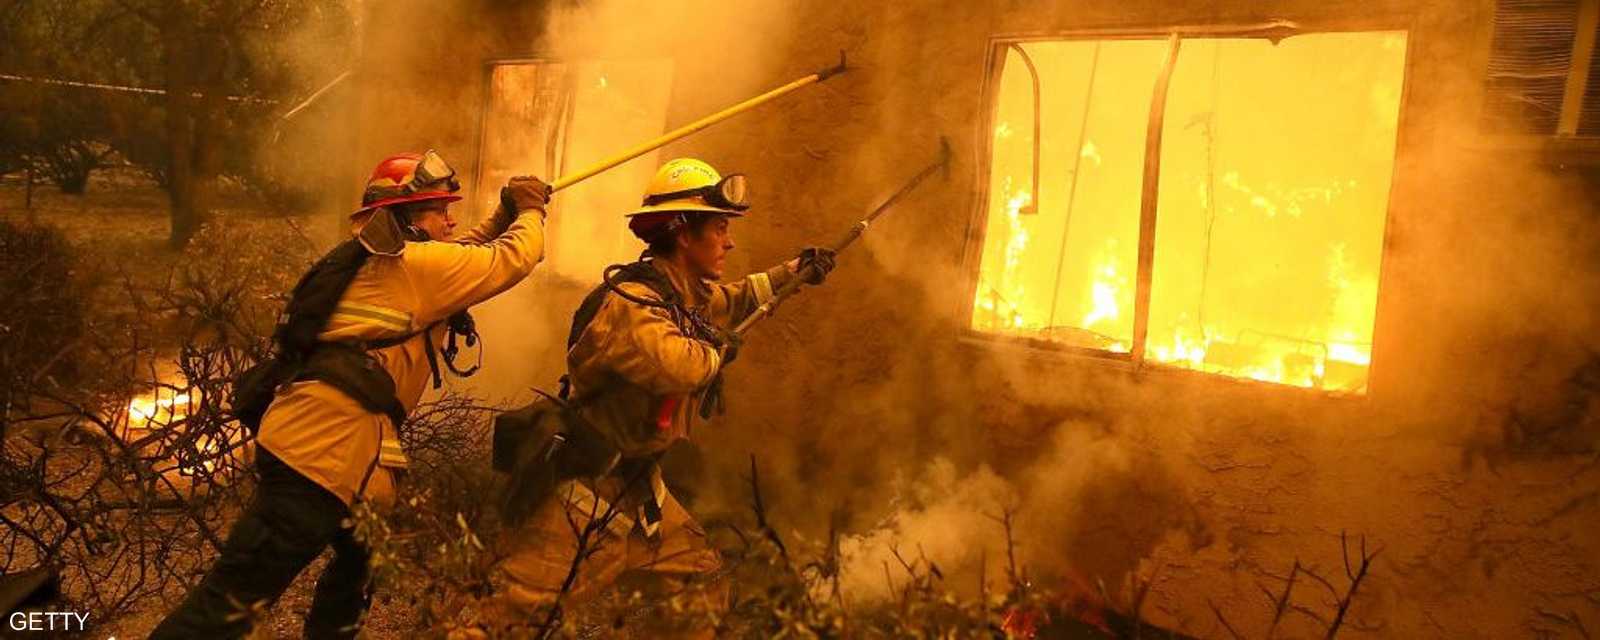 يواجه رجال الإطفاء بعض الظروف القاسية الصعبة